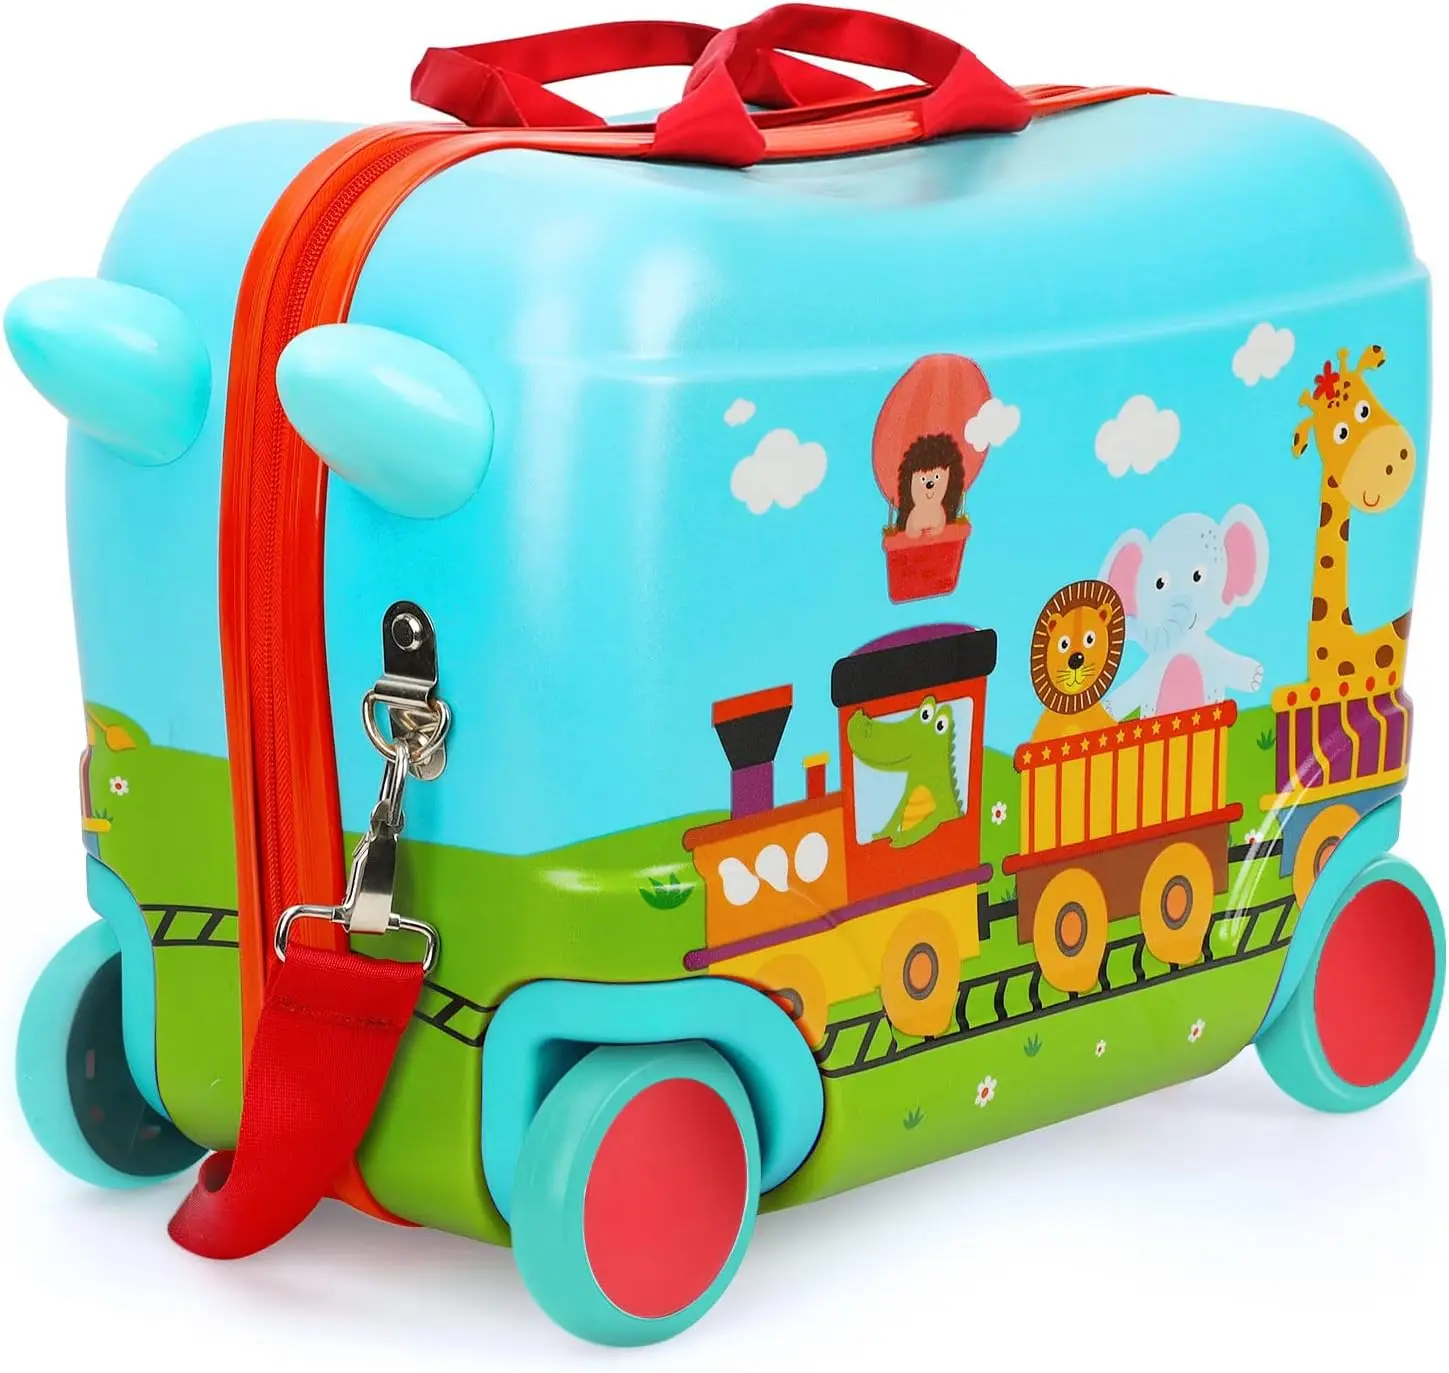 

Детский чемодан для катания, Детский чемодан для катания 17 u201D, Детский чемодан с колесами для девочек и мальчиков, детские чемоданы для G